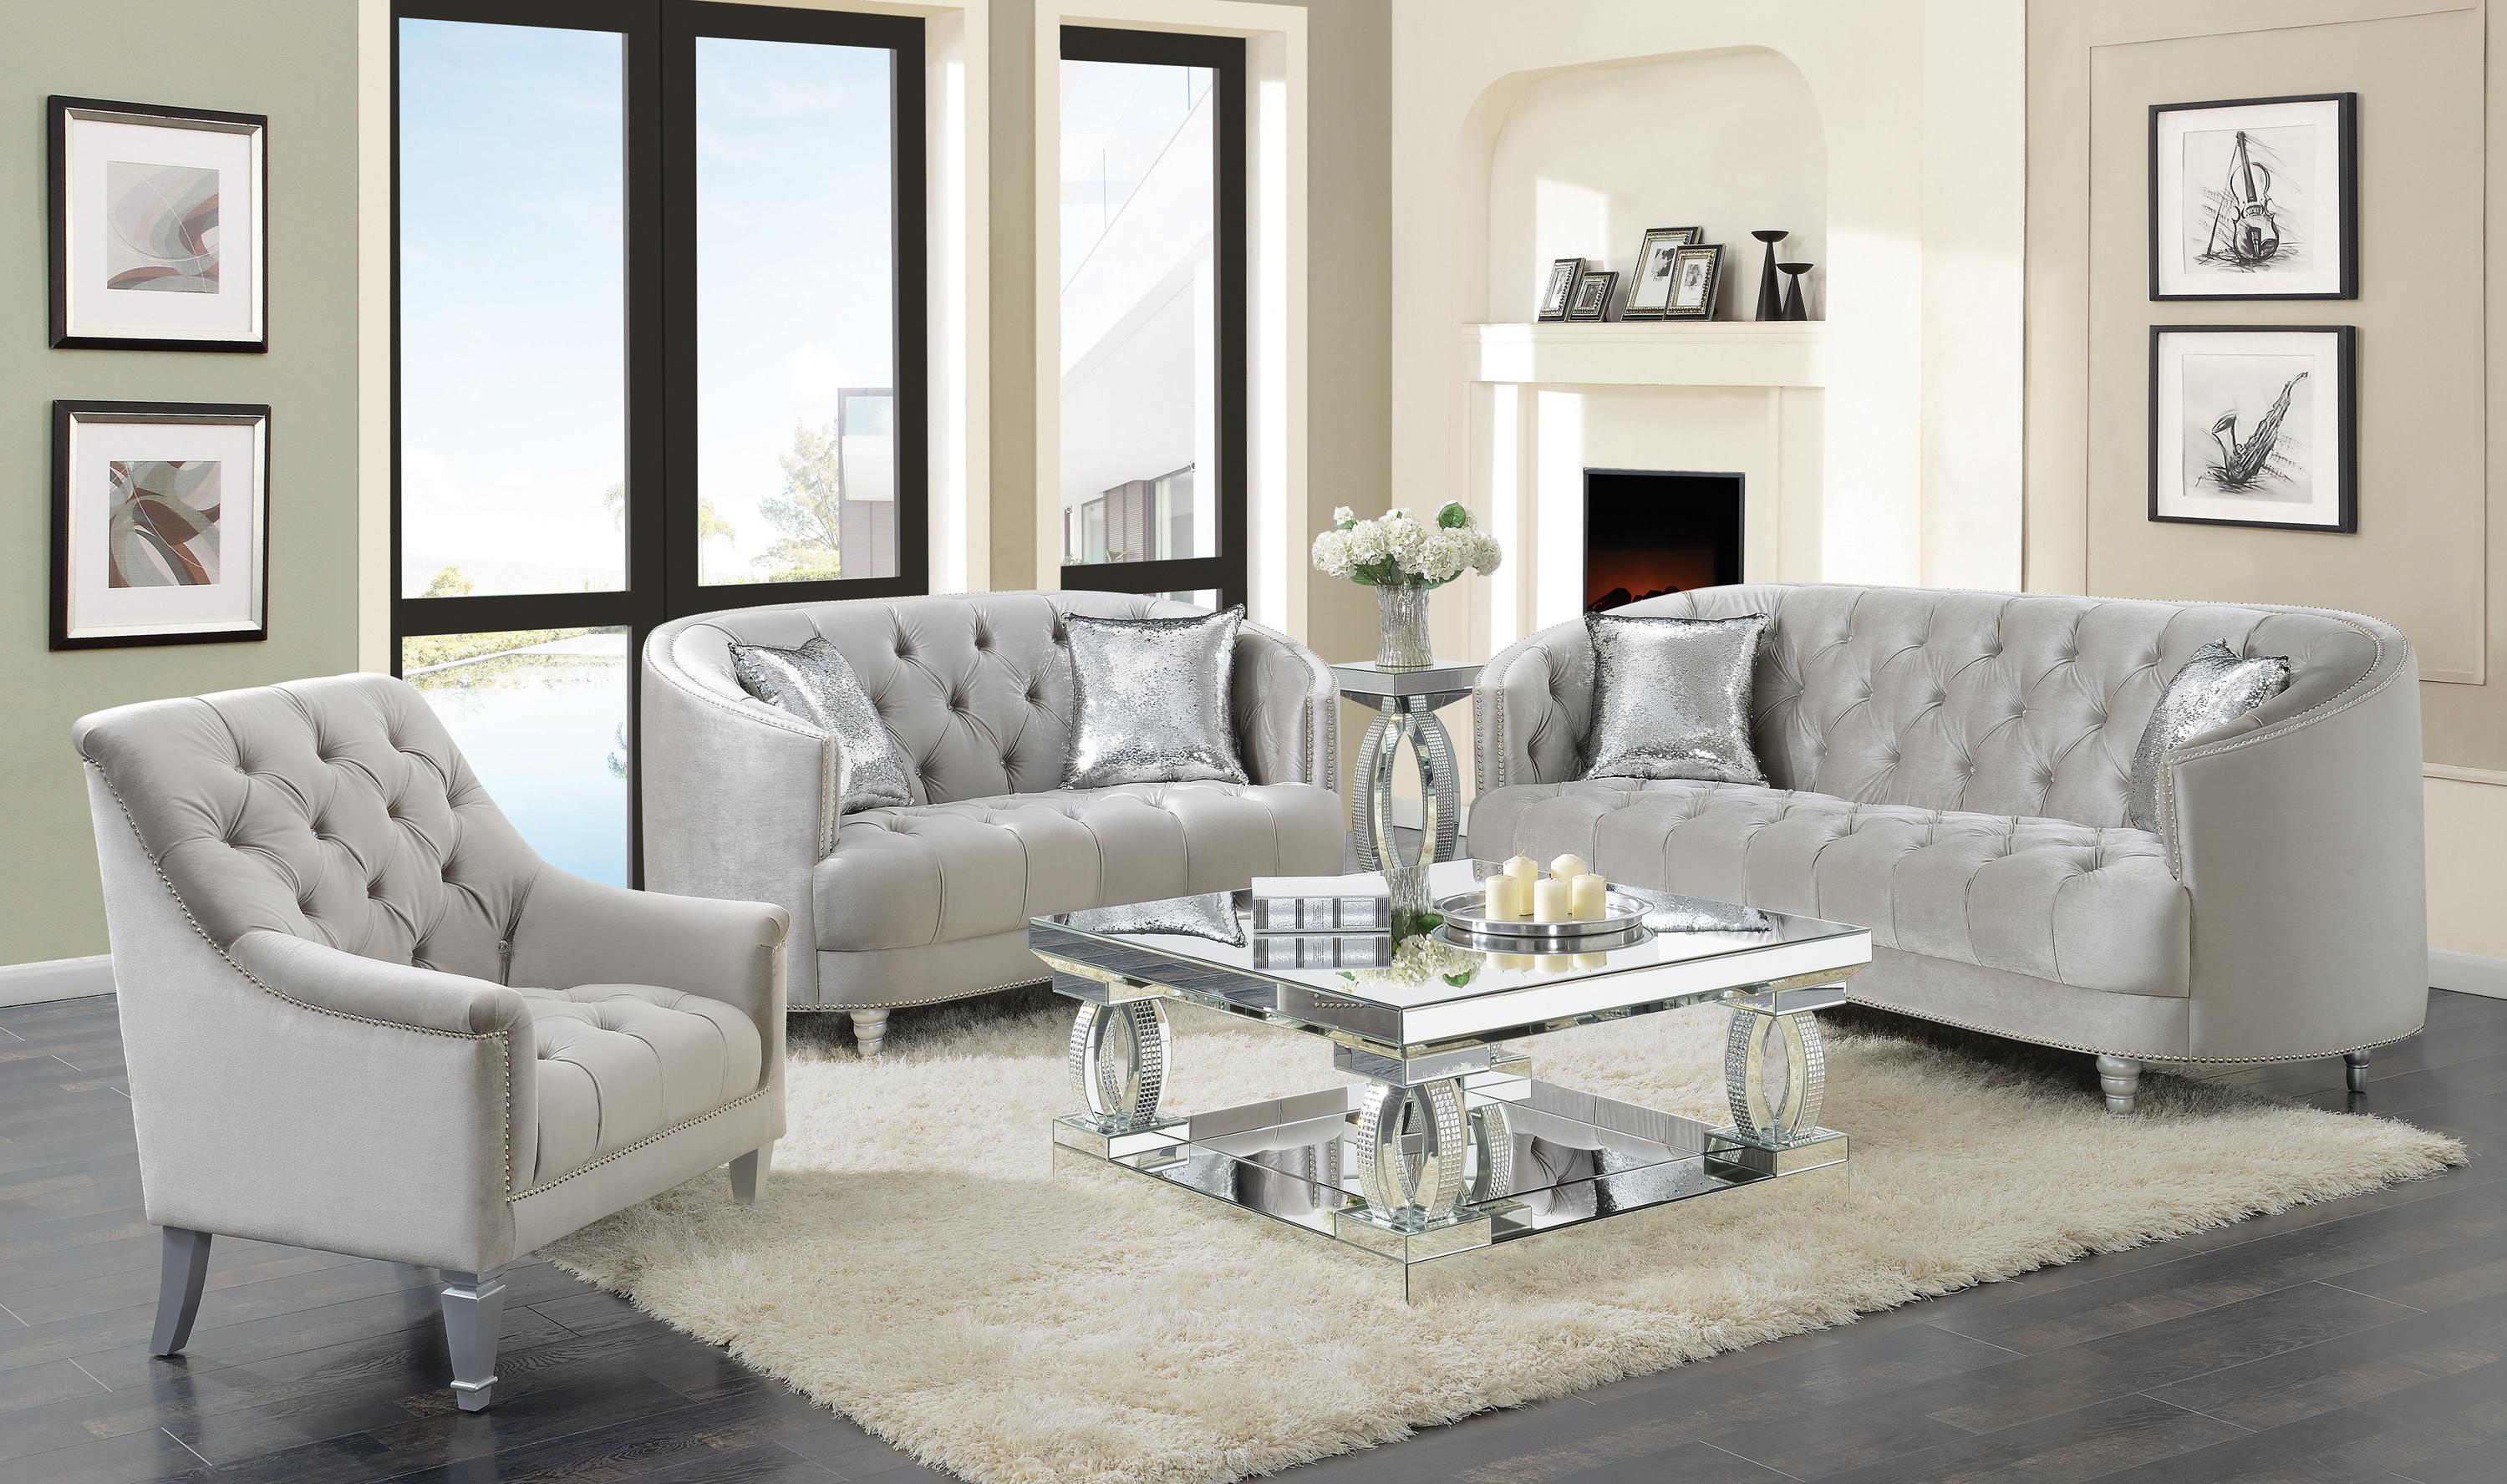 Classic Living Room Set 508461-S2 Avonlea 508461-S2 in Gray Velvet